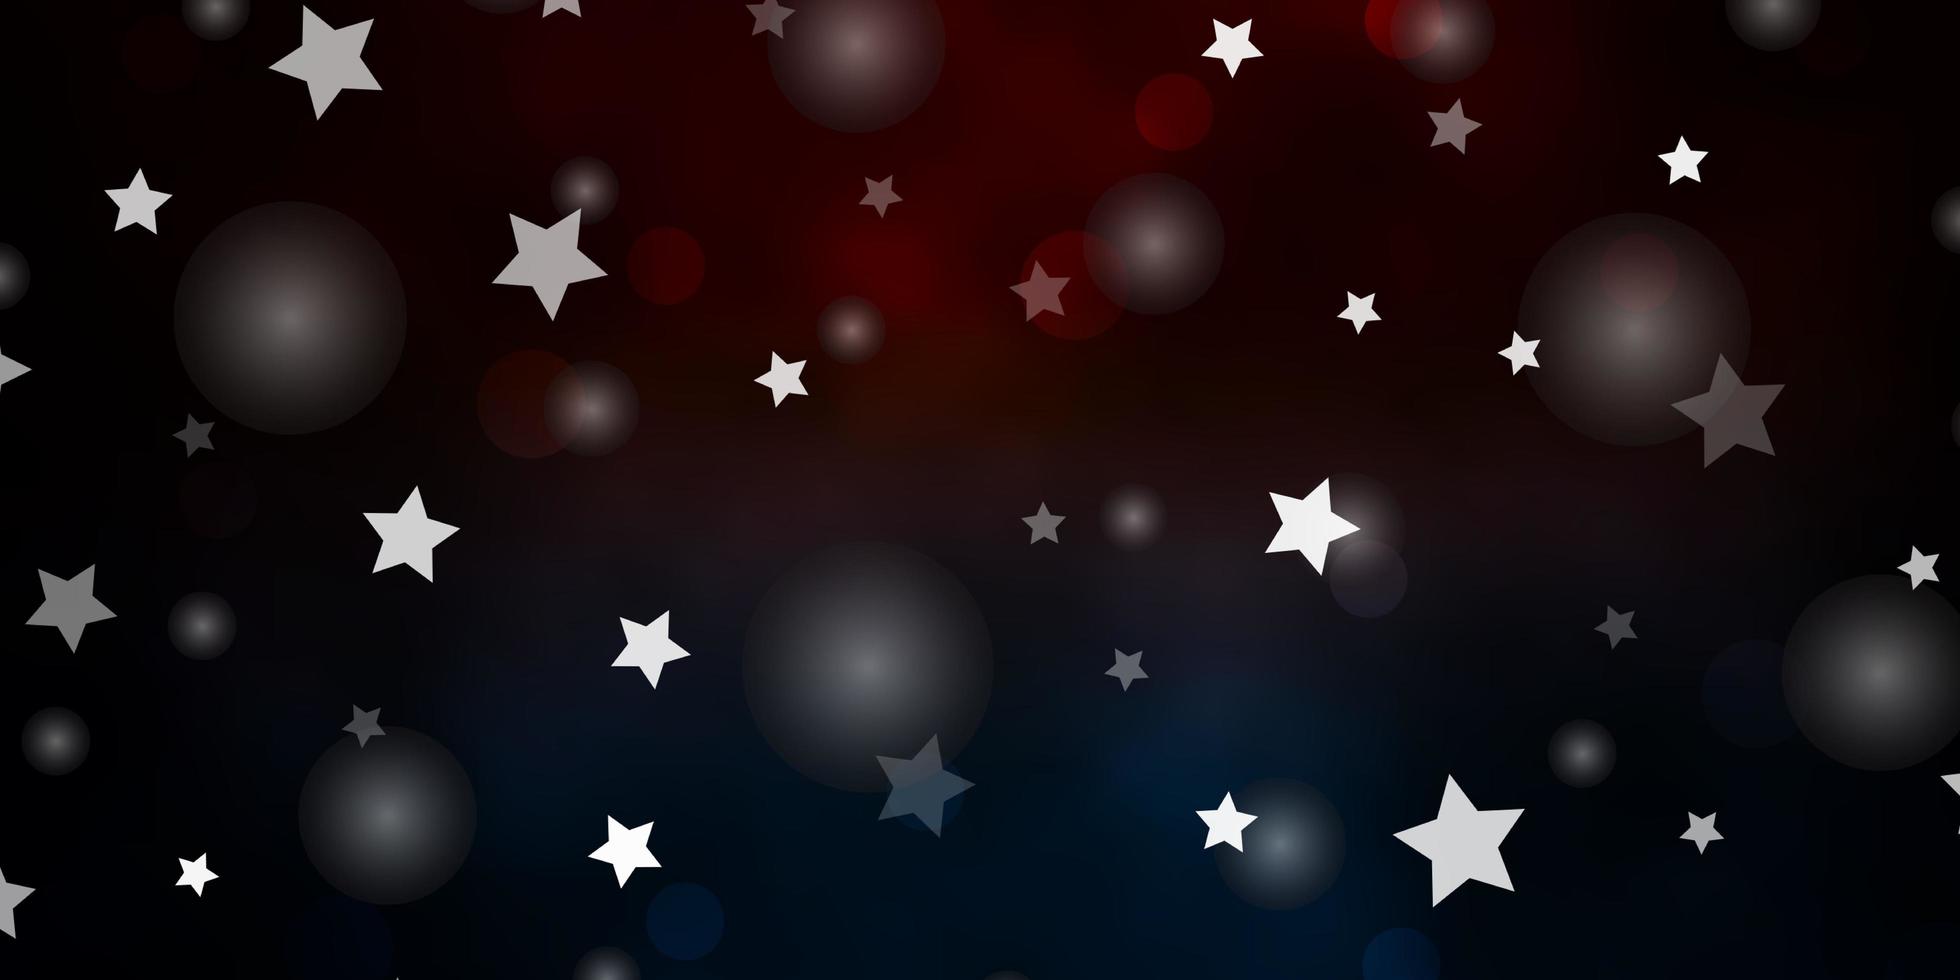 Fondo de vector azul oscuro, amarillo con círculos, estrellas. Ilustración con un conjunto de esferas abstractas de colores, estrellas. textura para persianas, cortinas.